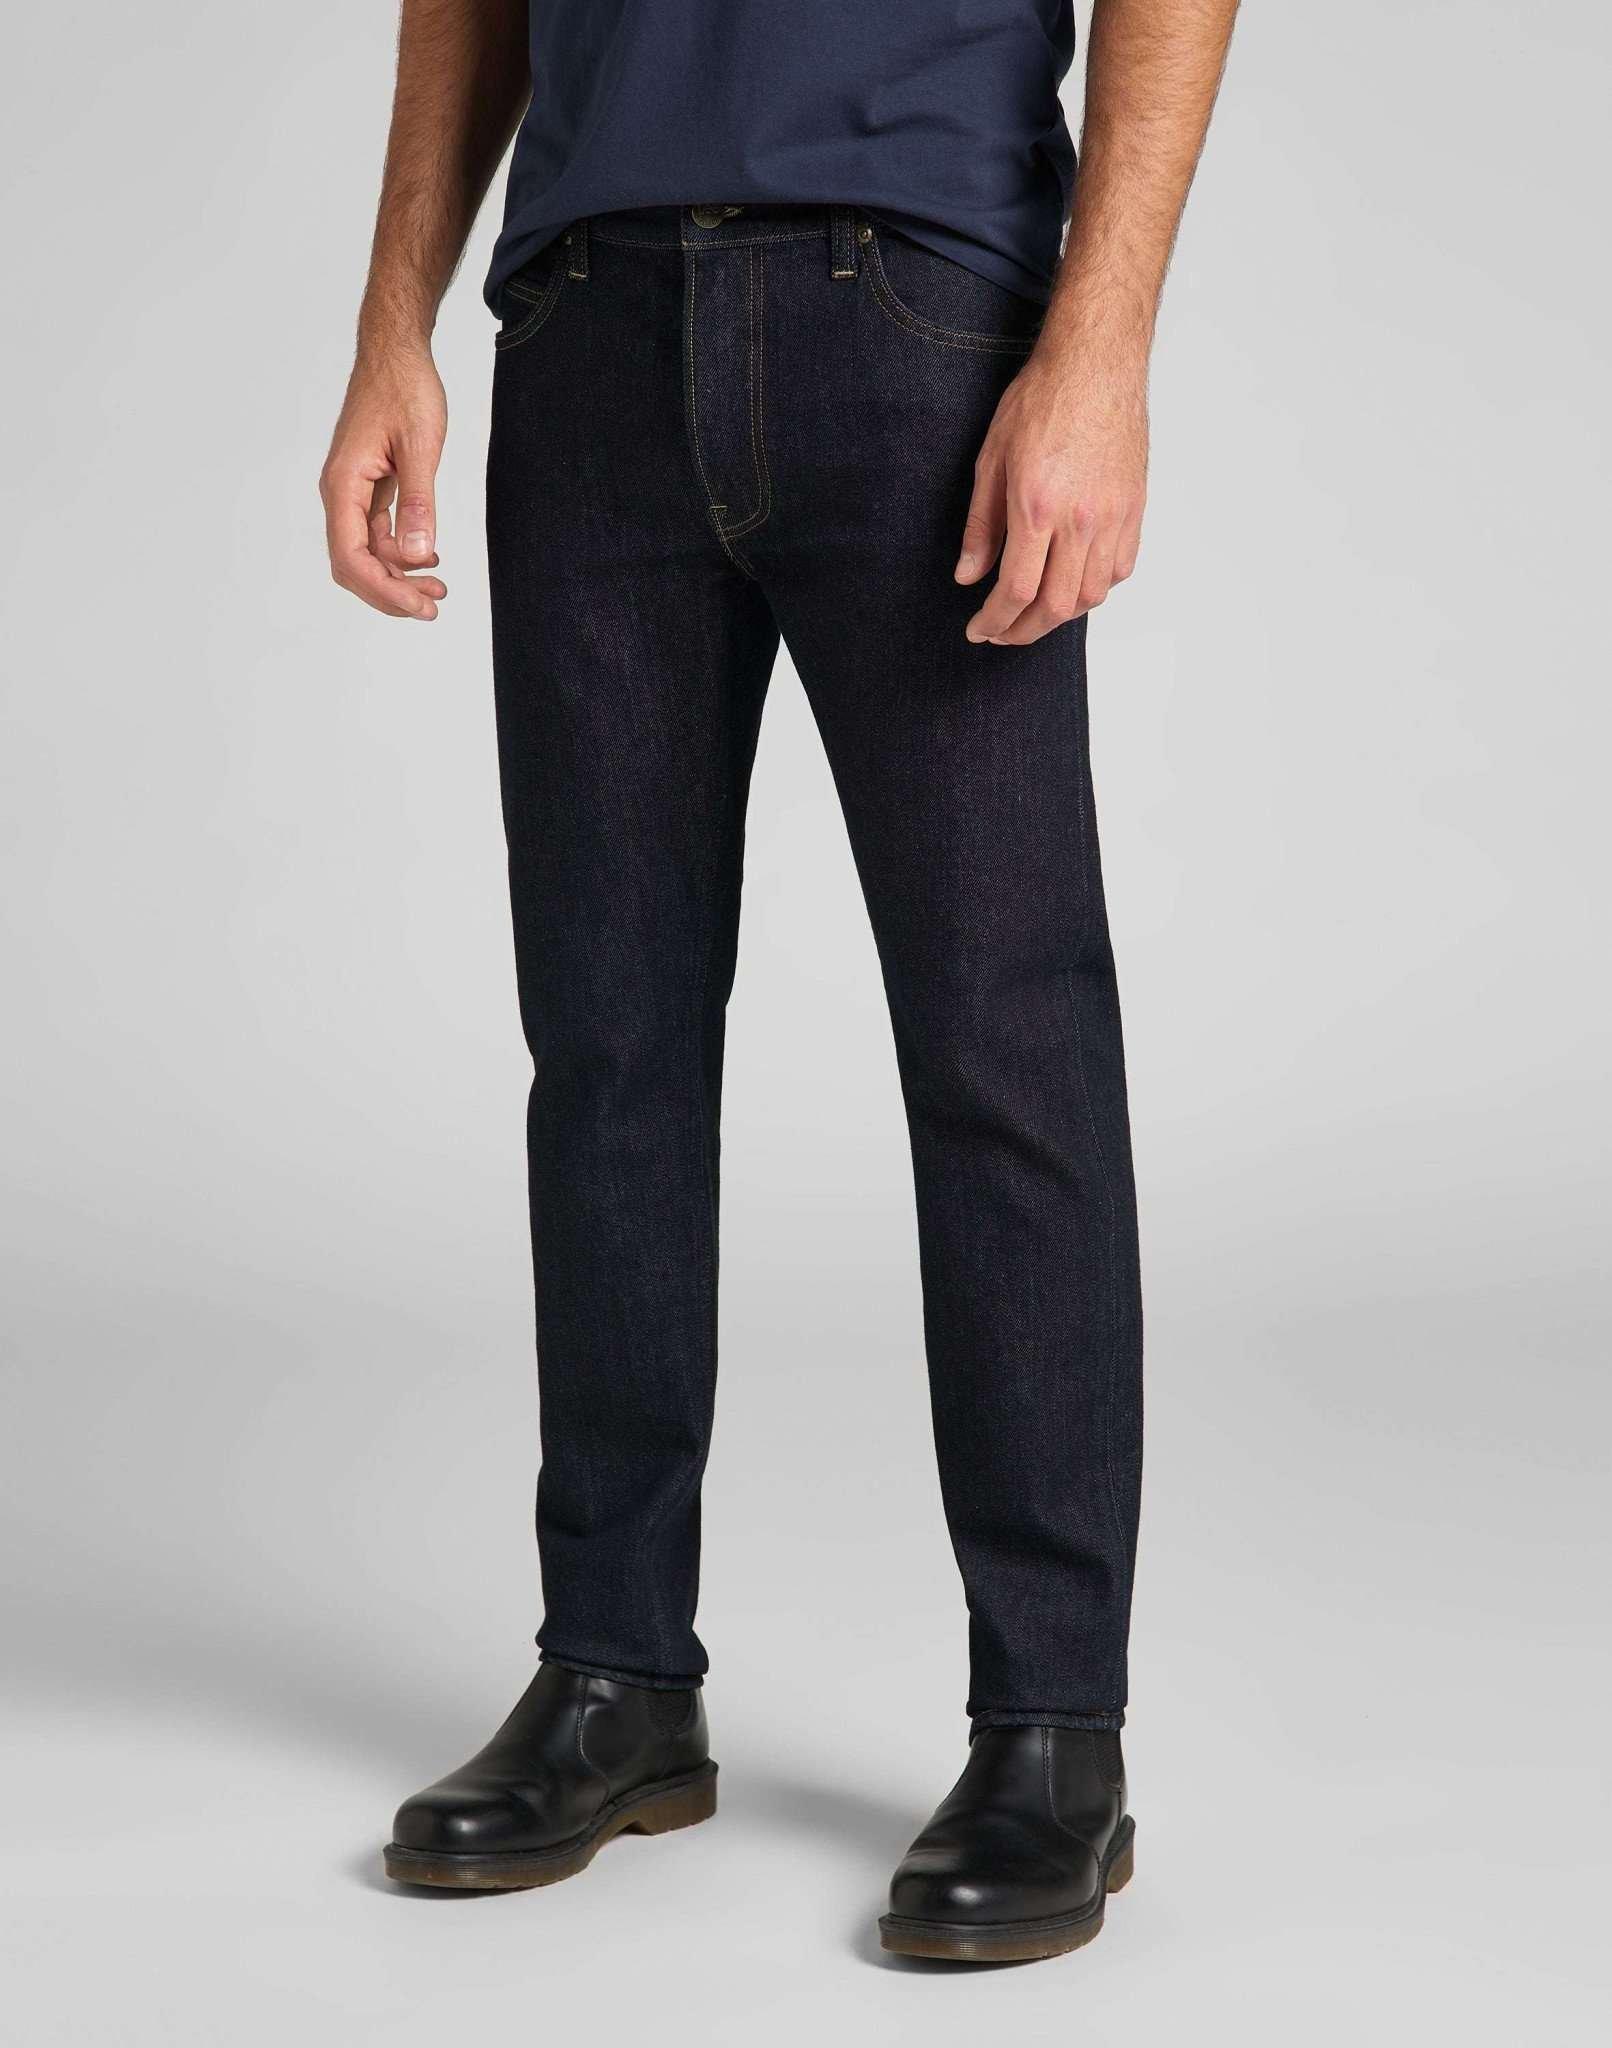 Jeans Slim Fit Rider Herren Blau Denim L30/W30 von Lee